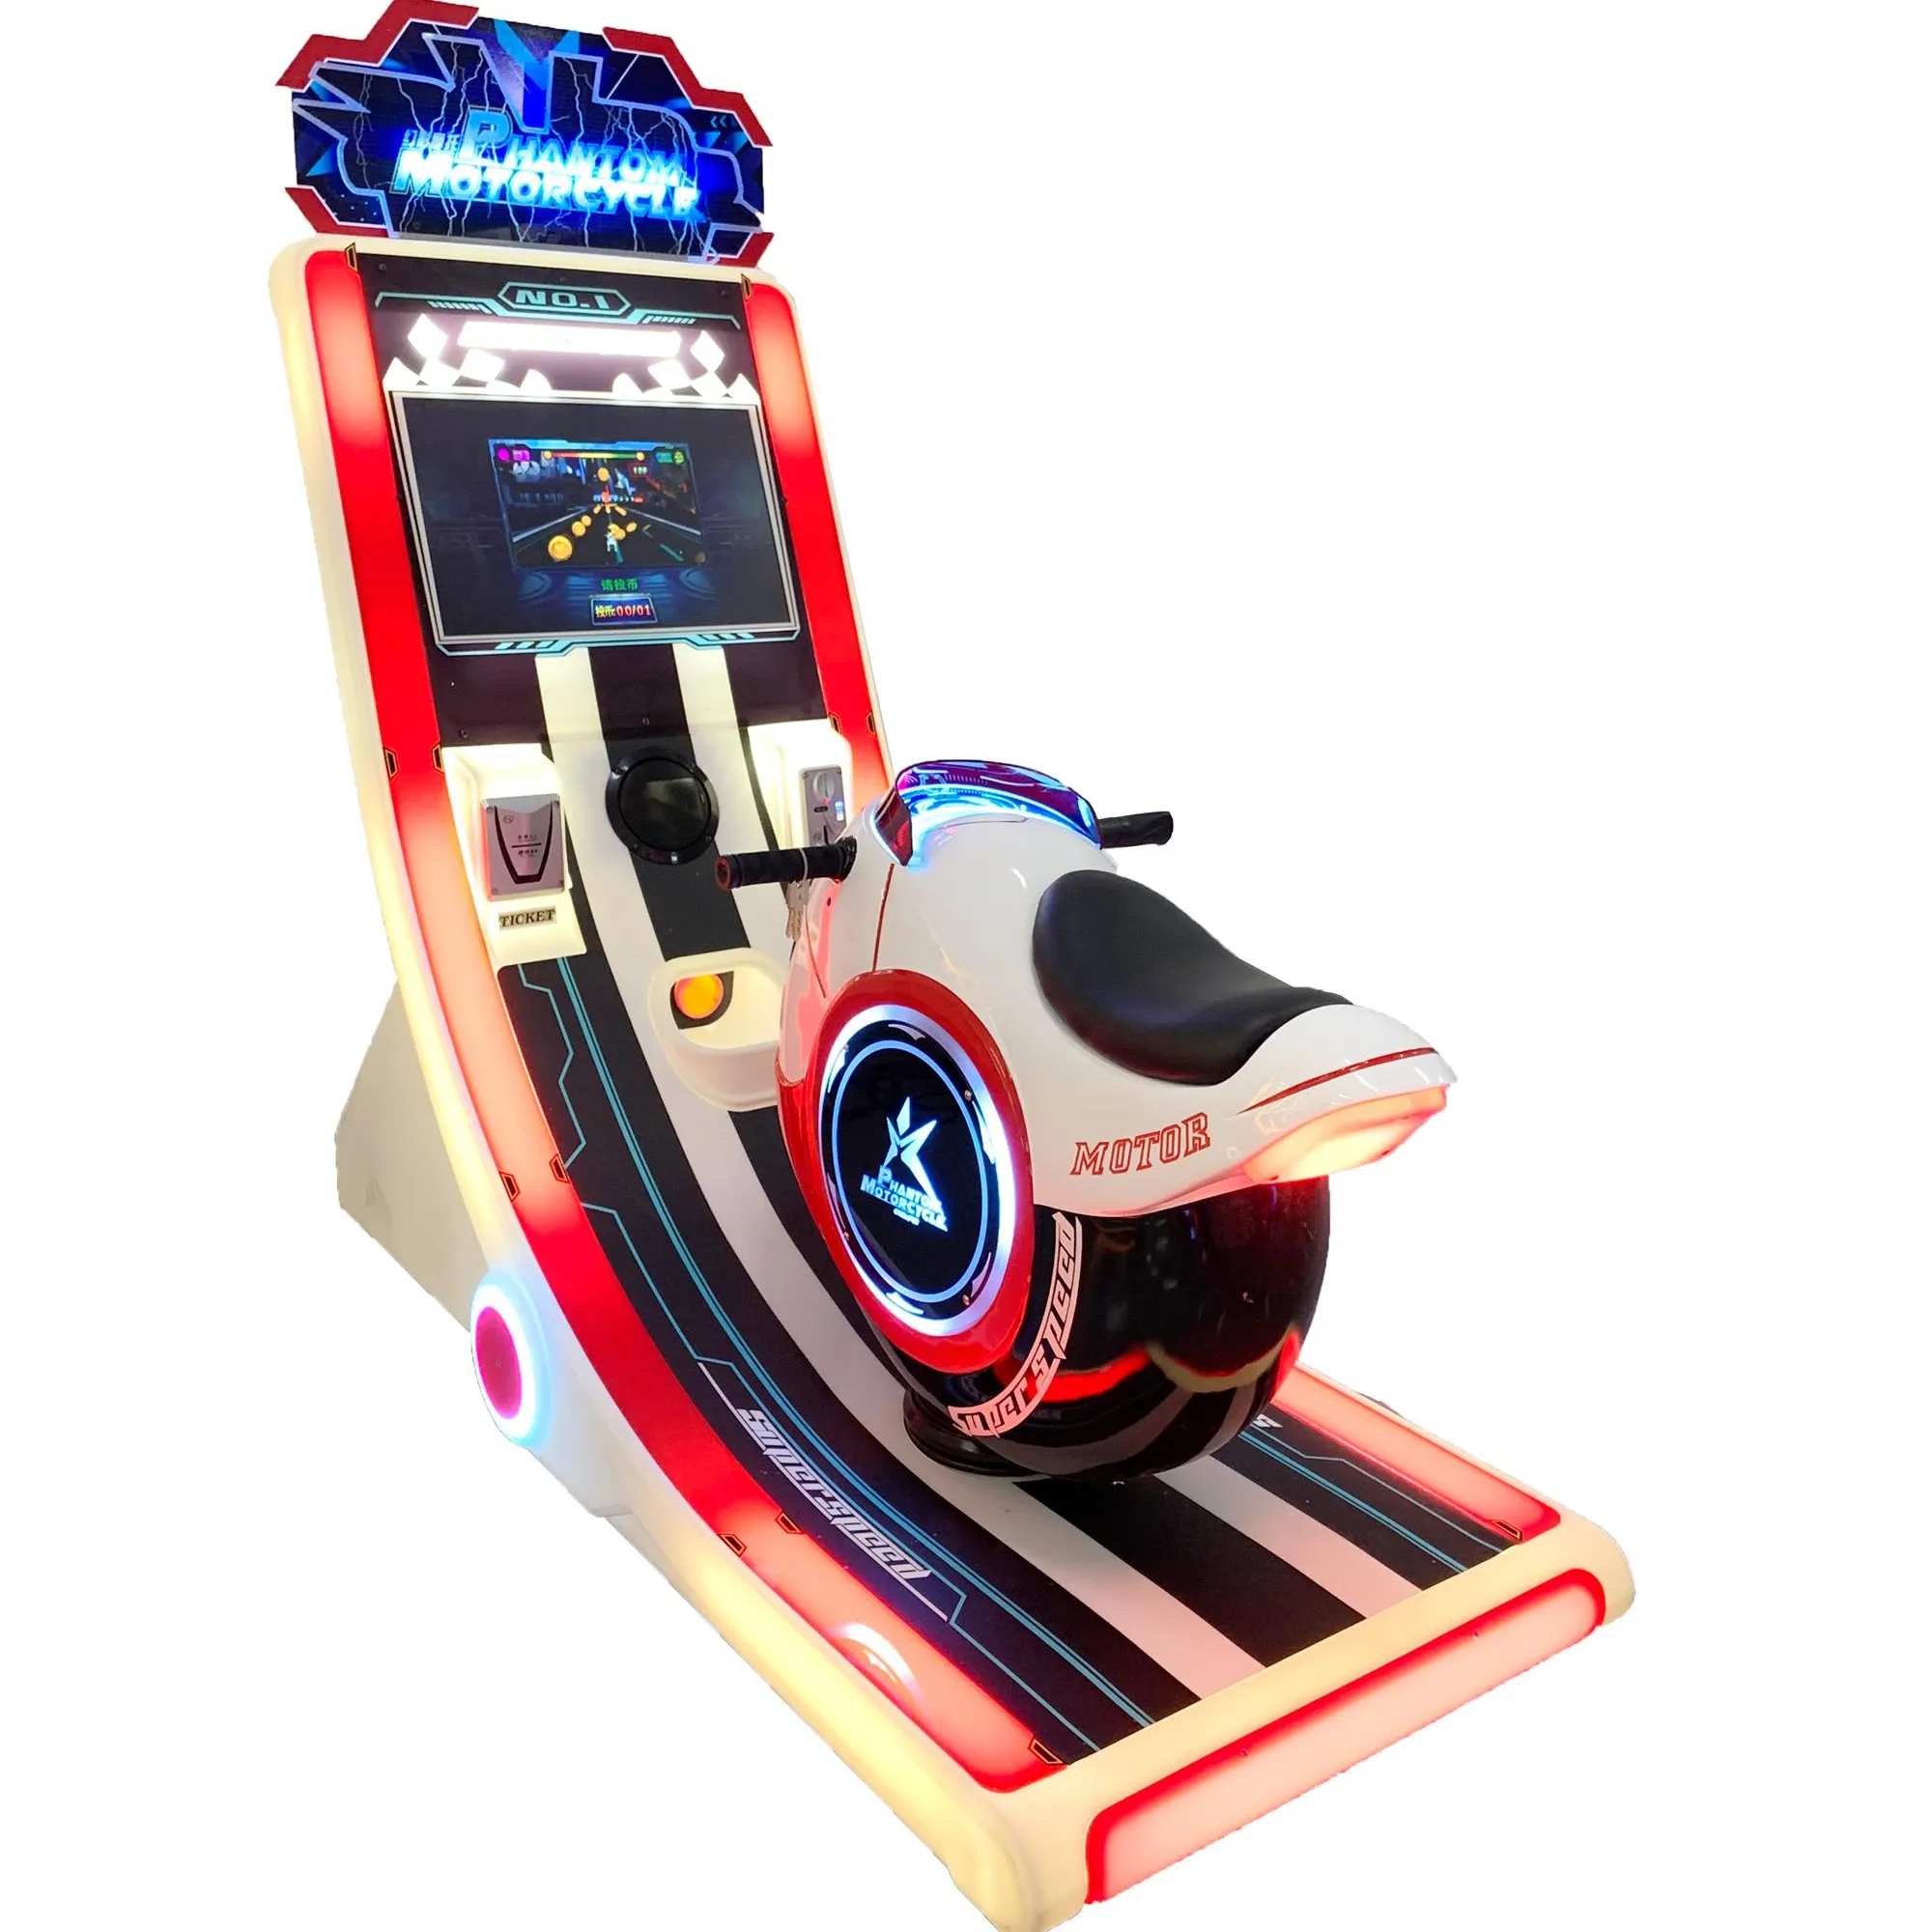 Máquina de juego de arcade para niños de nuevo diseño, máquina de juego de carreras de coches que funciona con monedas